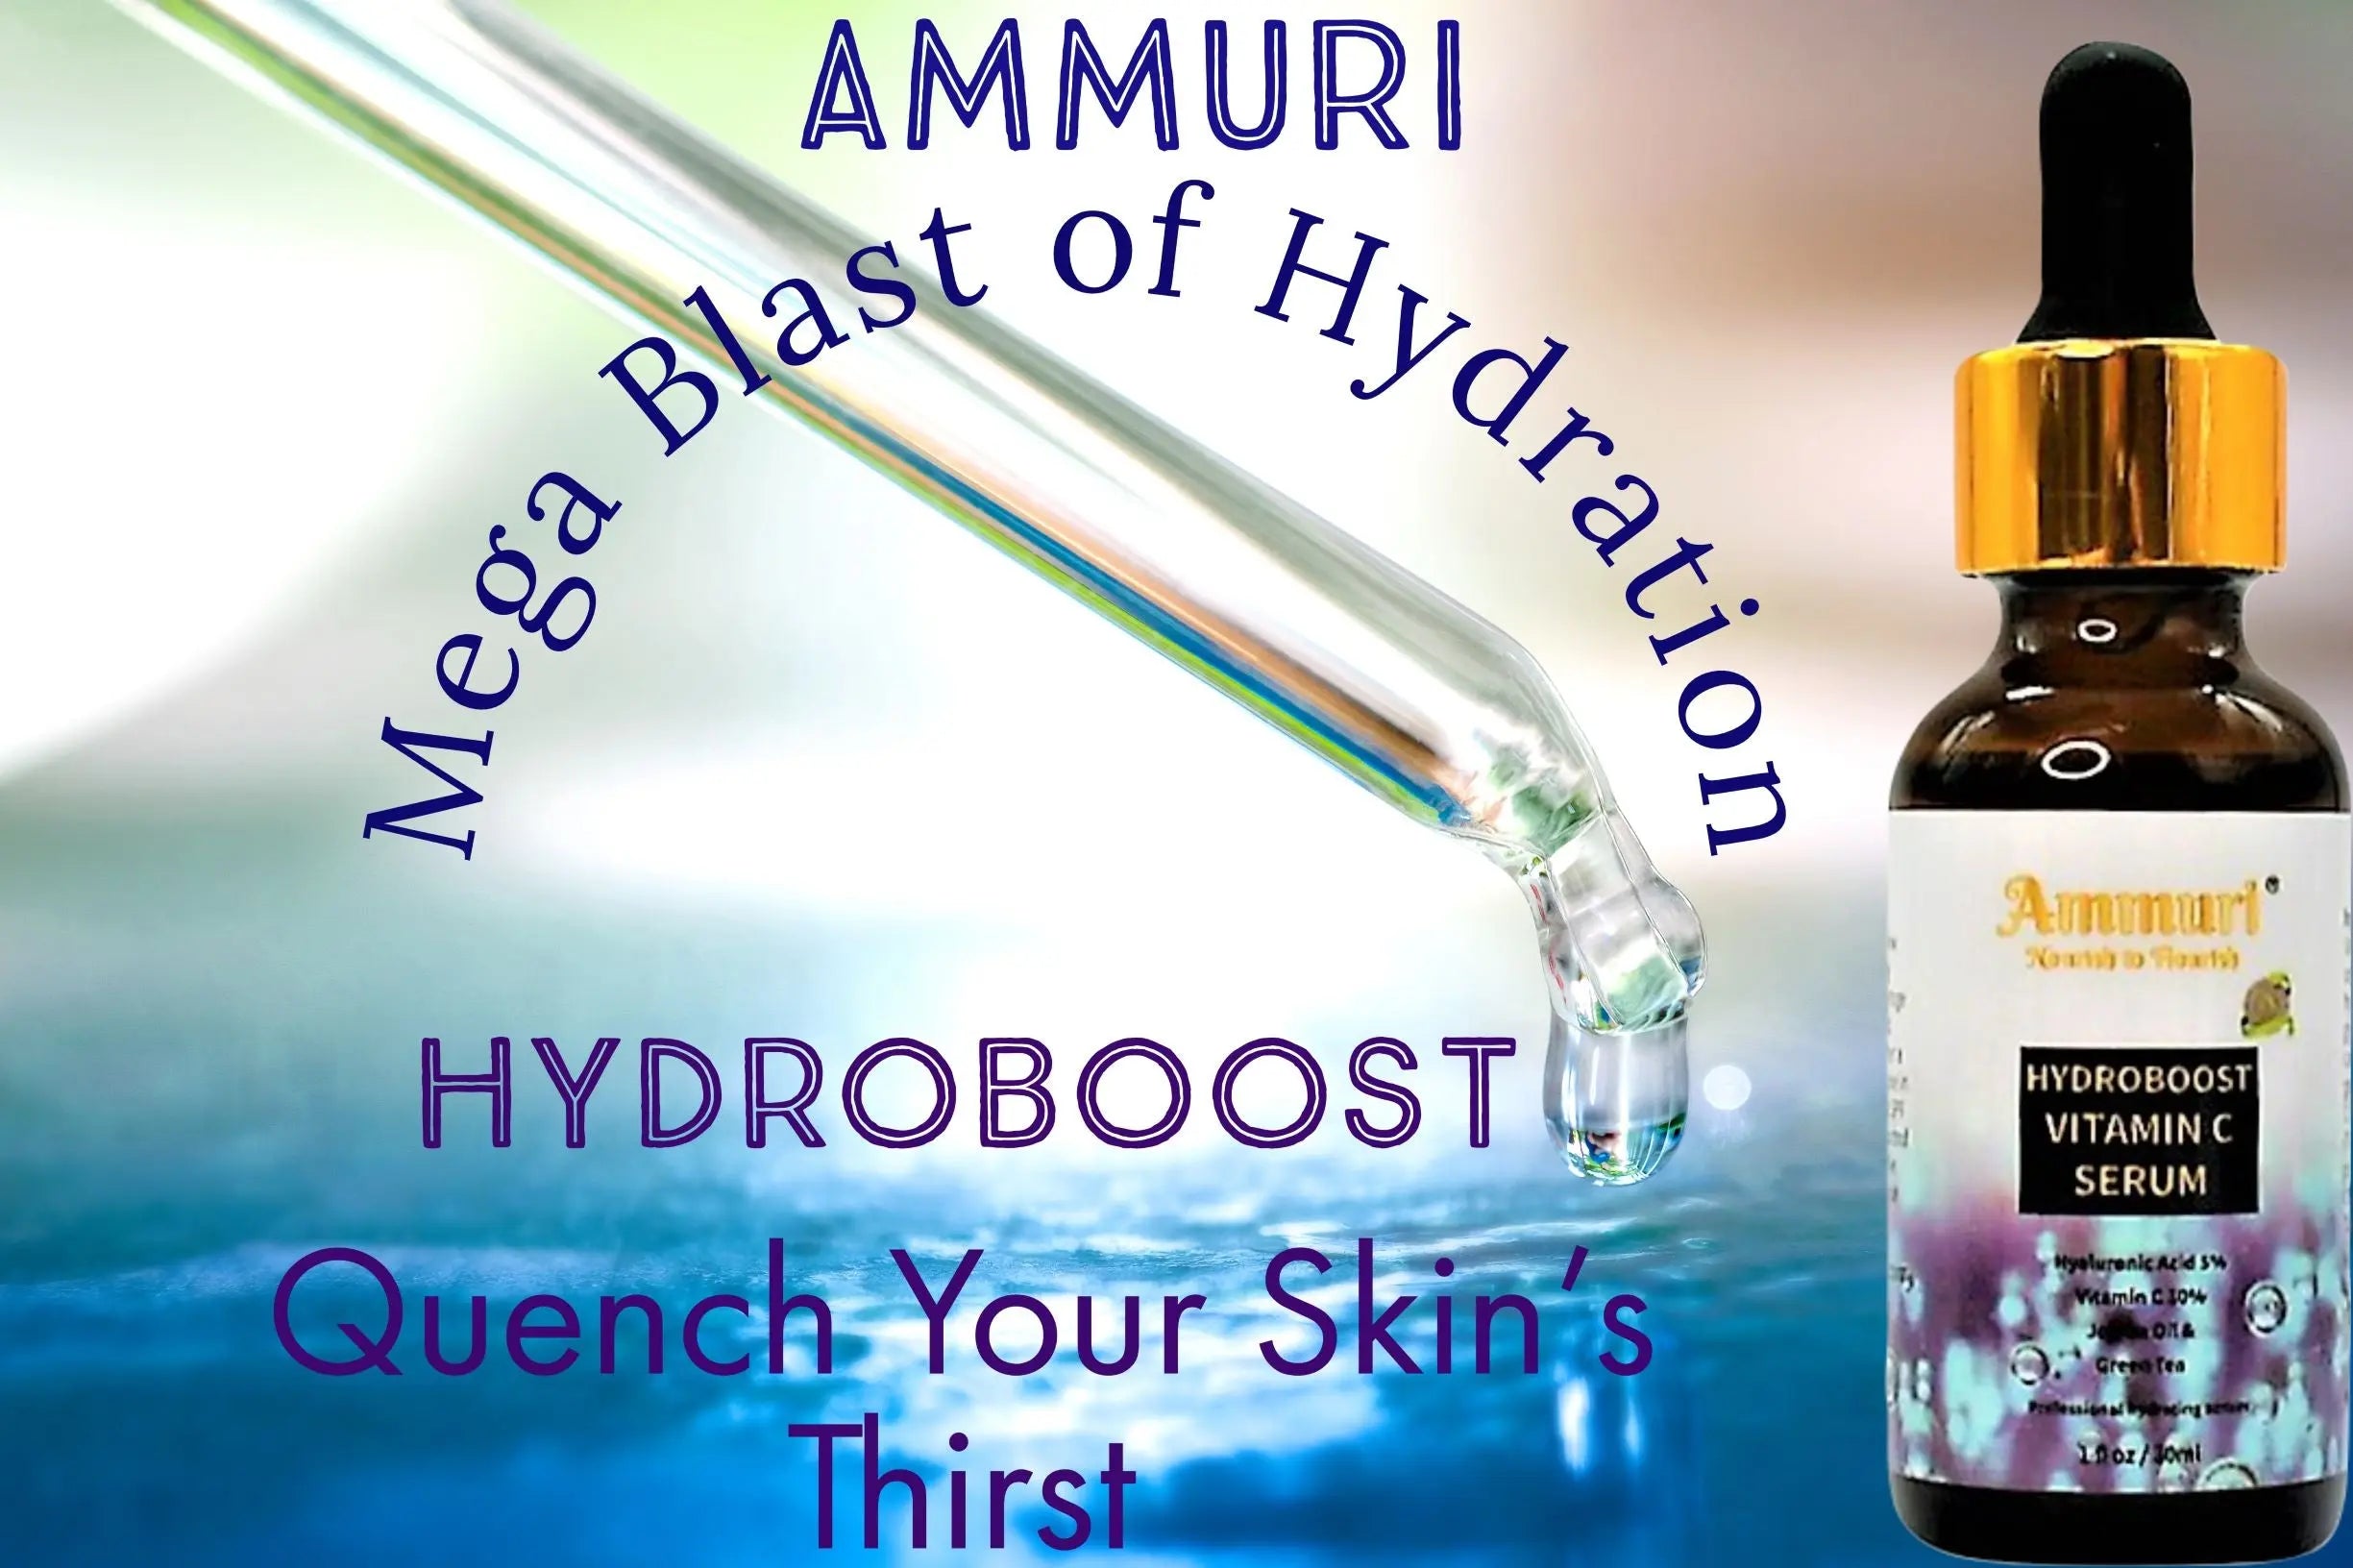 Hydroboost Vitamin C Serum with Hyaluronic Acid High Dosed Vitamin C Hyaluronic Acid with Herbal Infusion, Vitamin E & Aloe Vera Ammuri Skincare